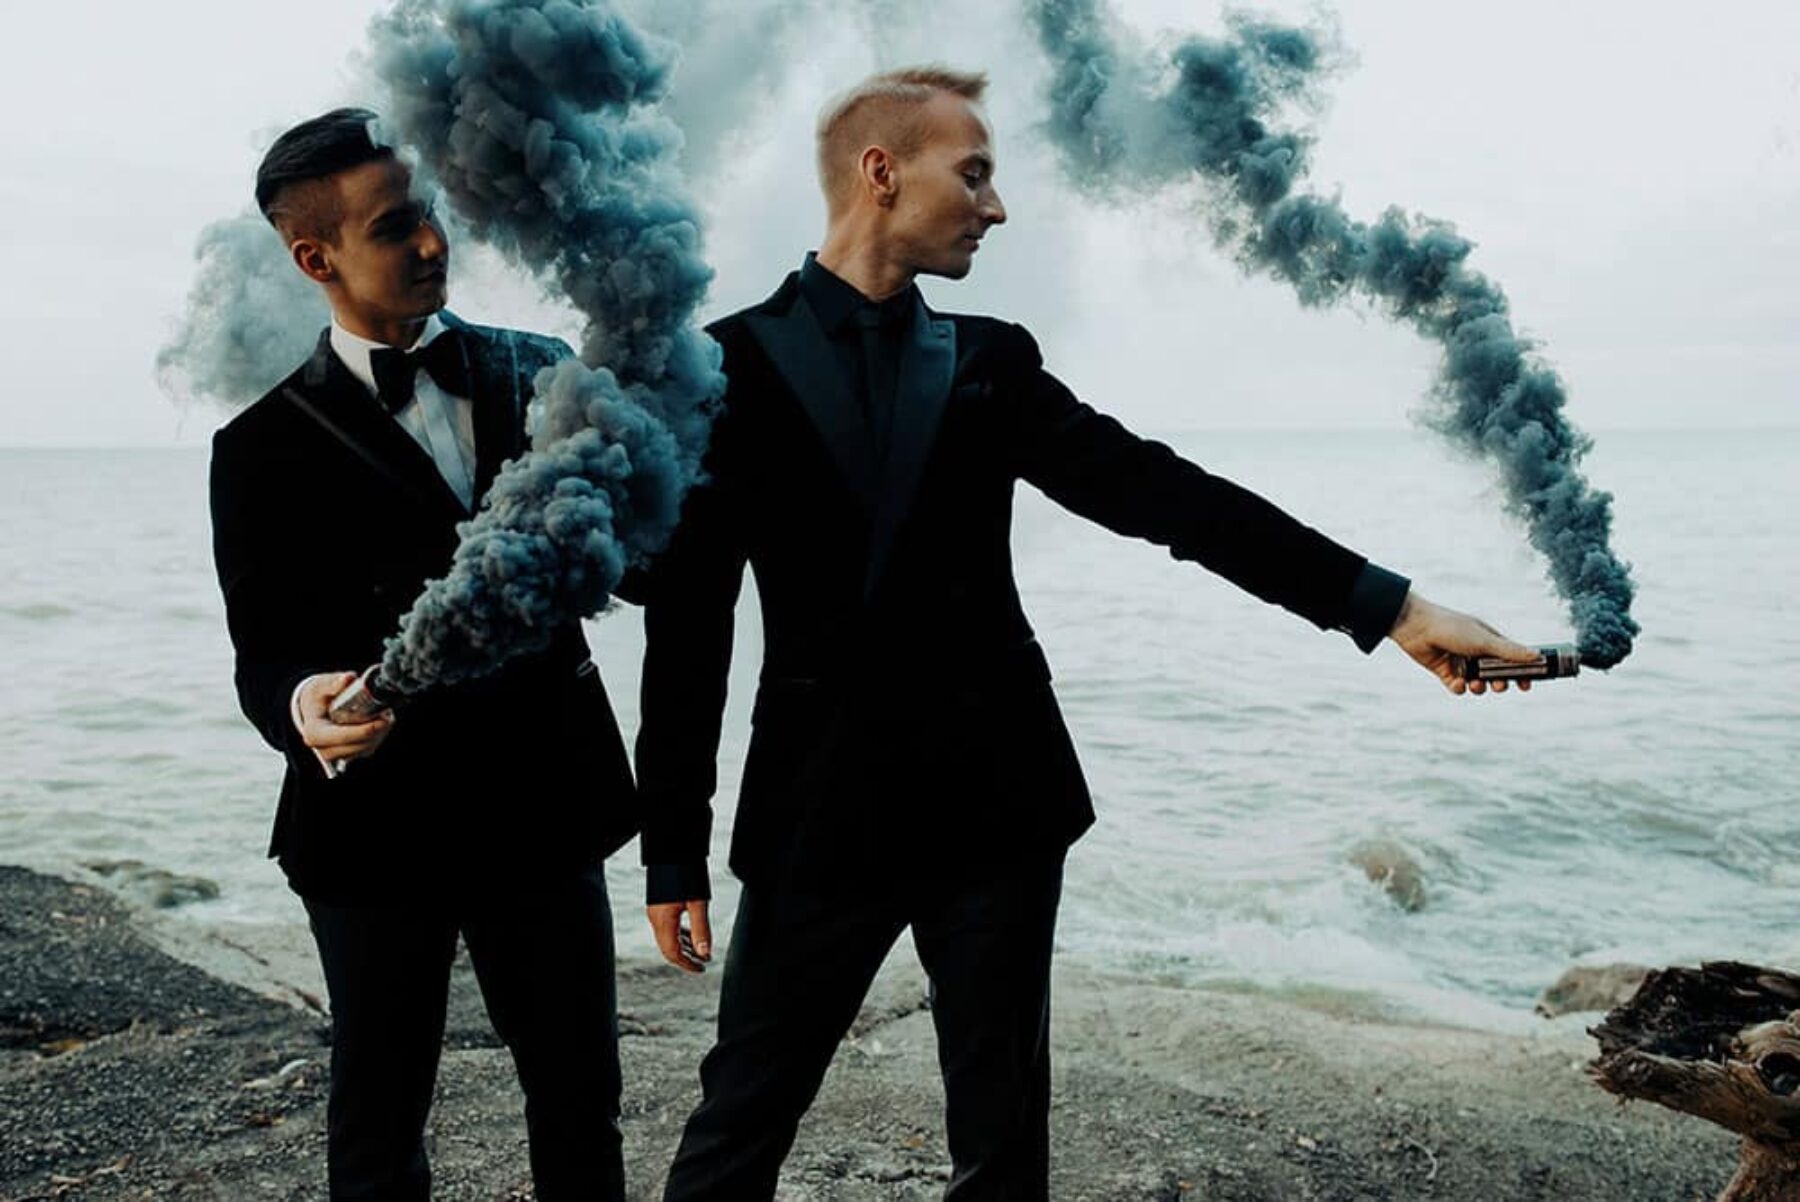 stylish gay wedding with smoke bombs